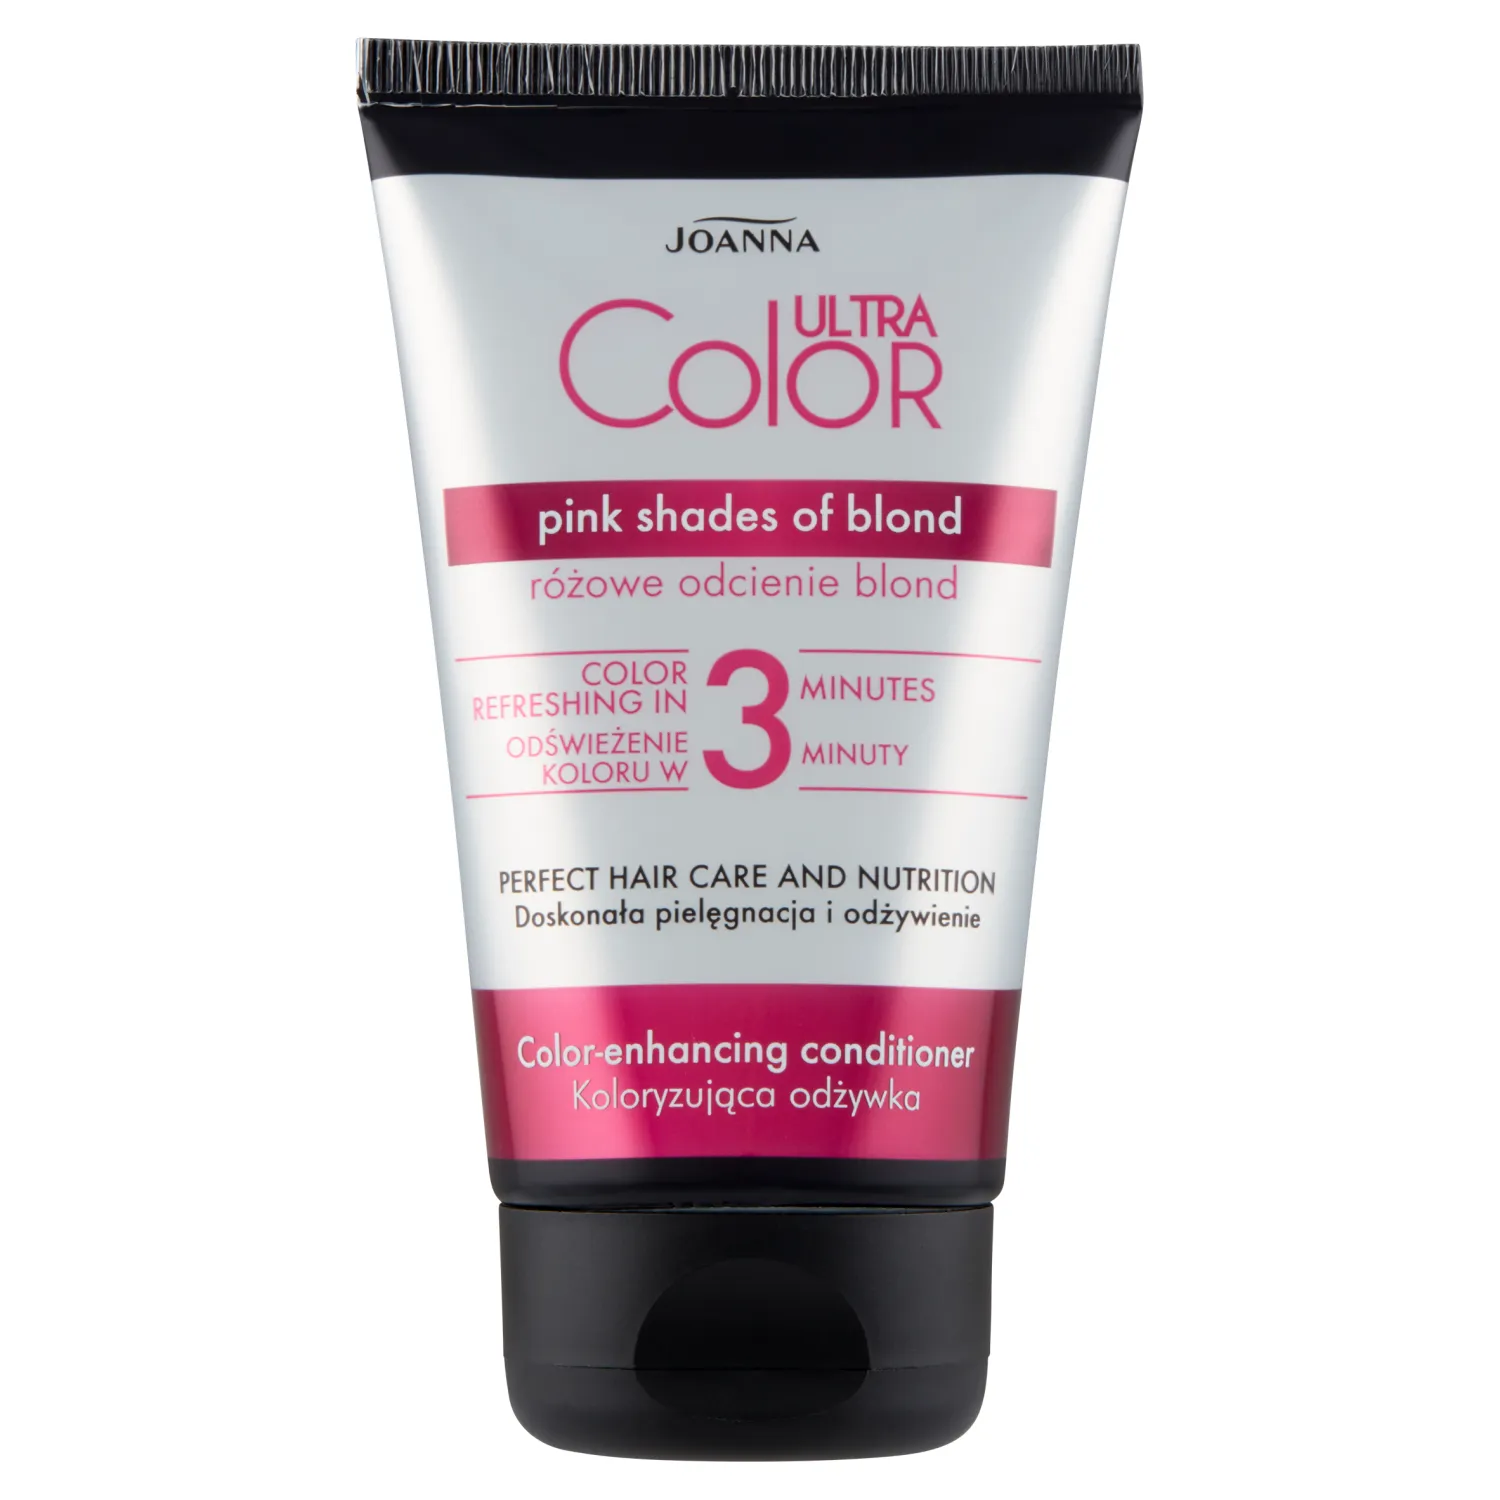 Joanna Ultra Color odżywka koloryzująca różowe odcienie blond, 100 g